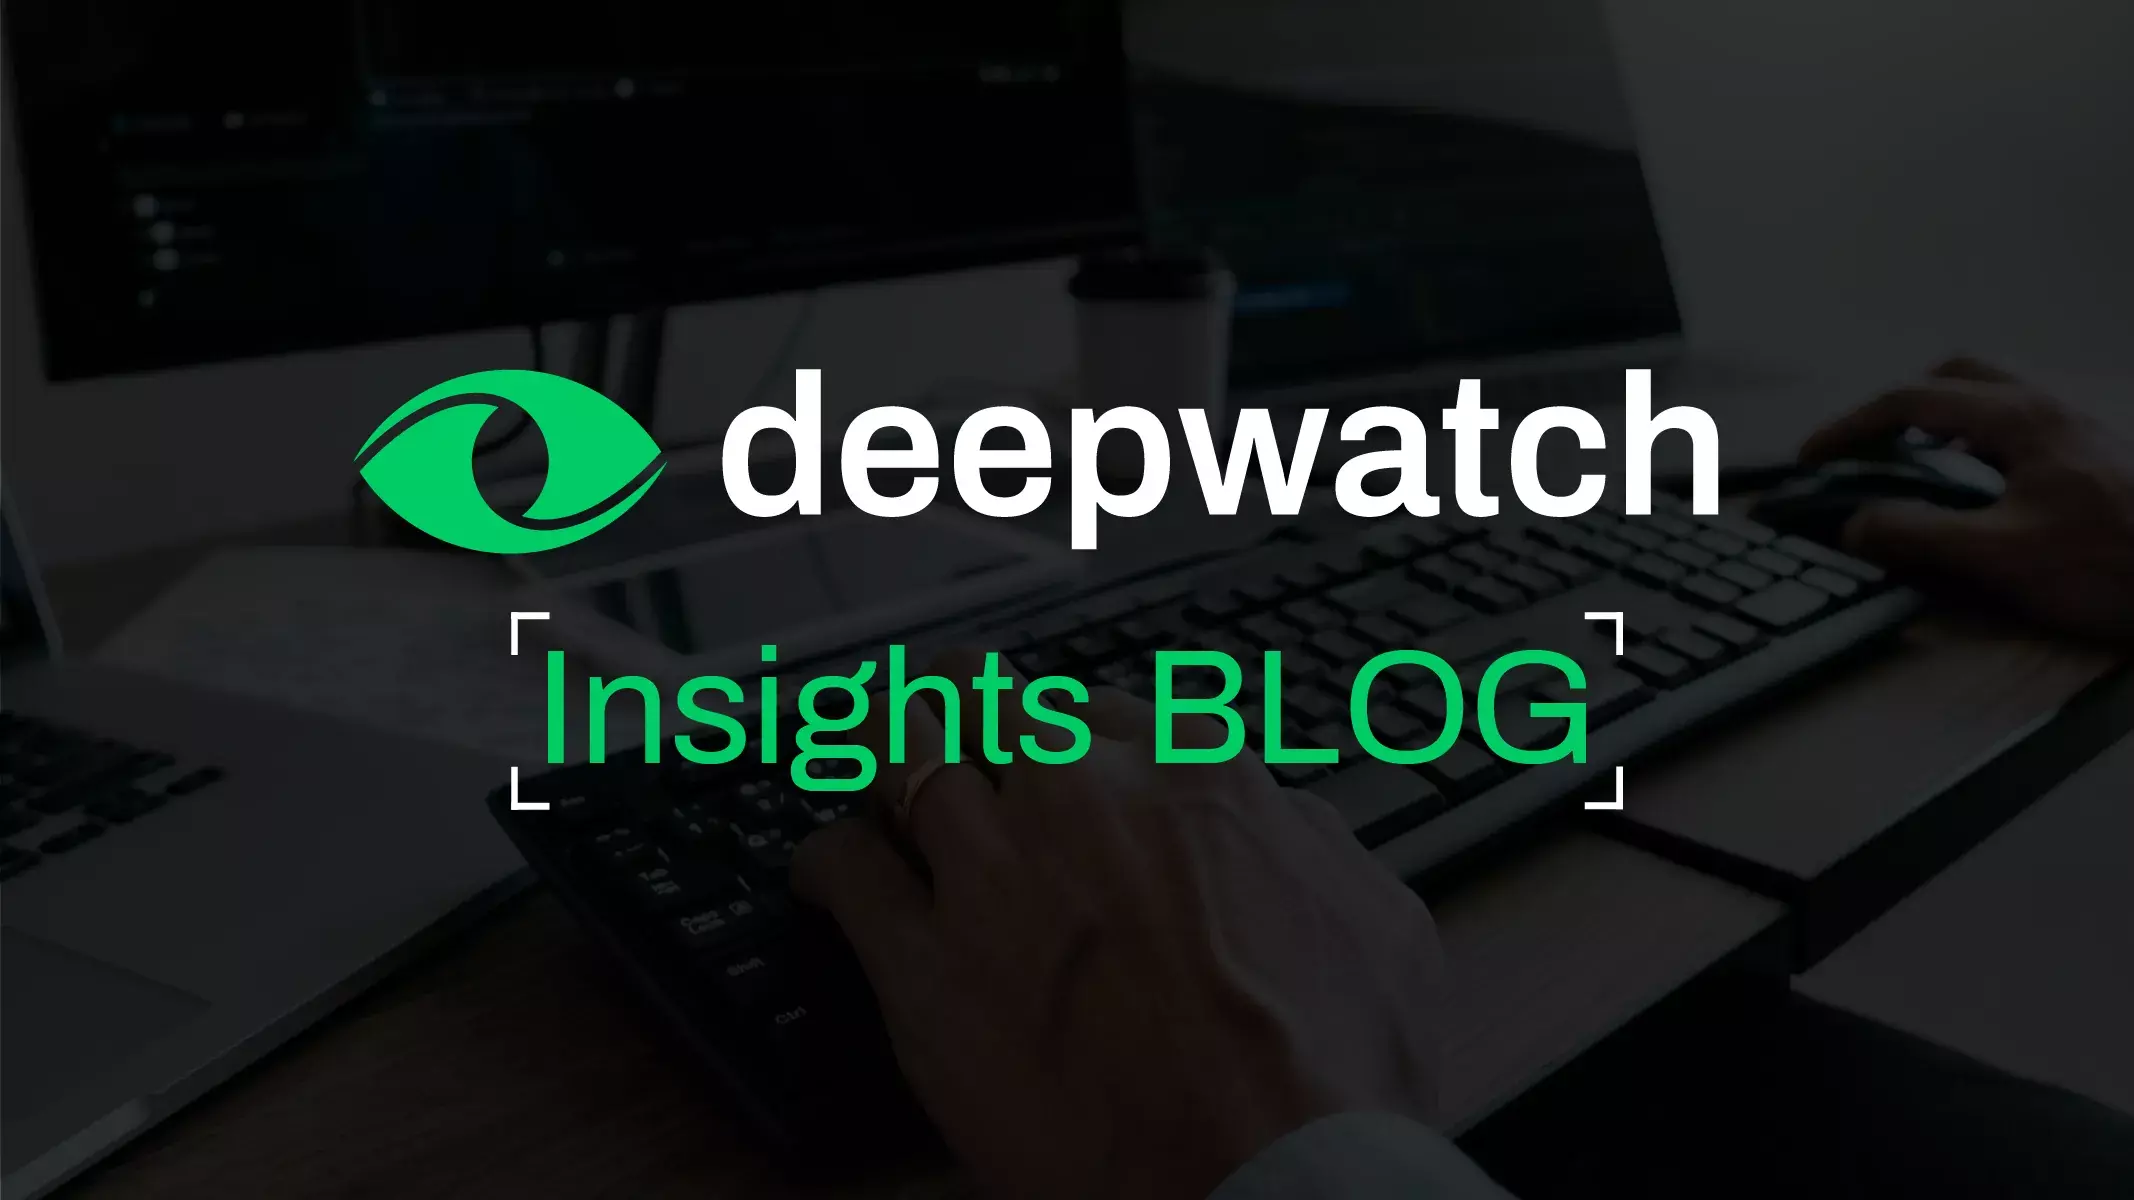 Deepwatch Insights Blog